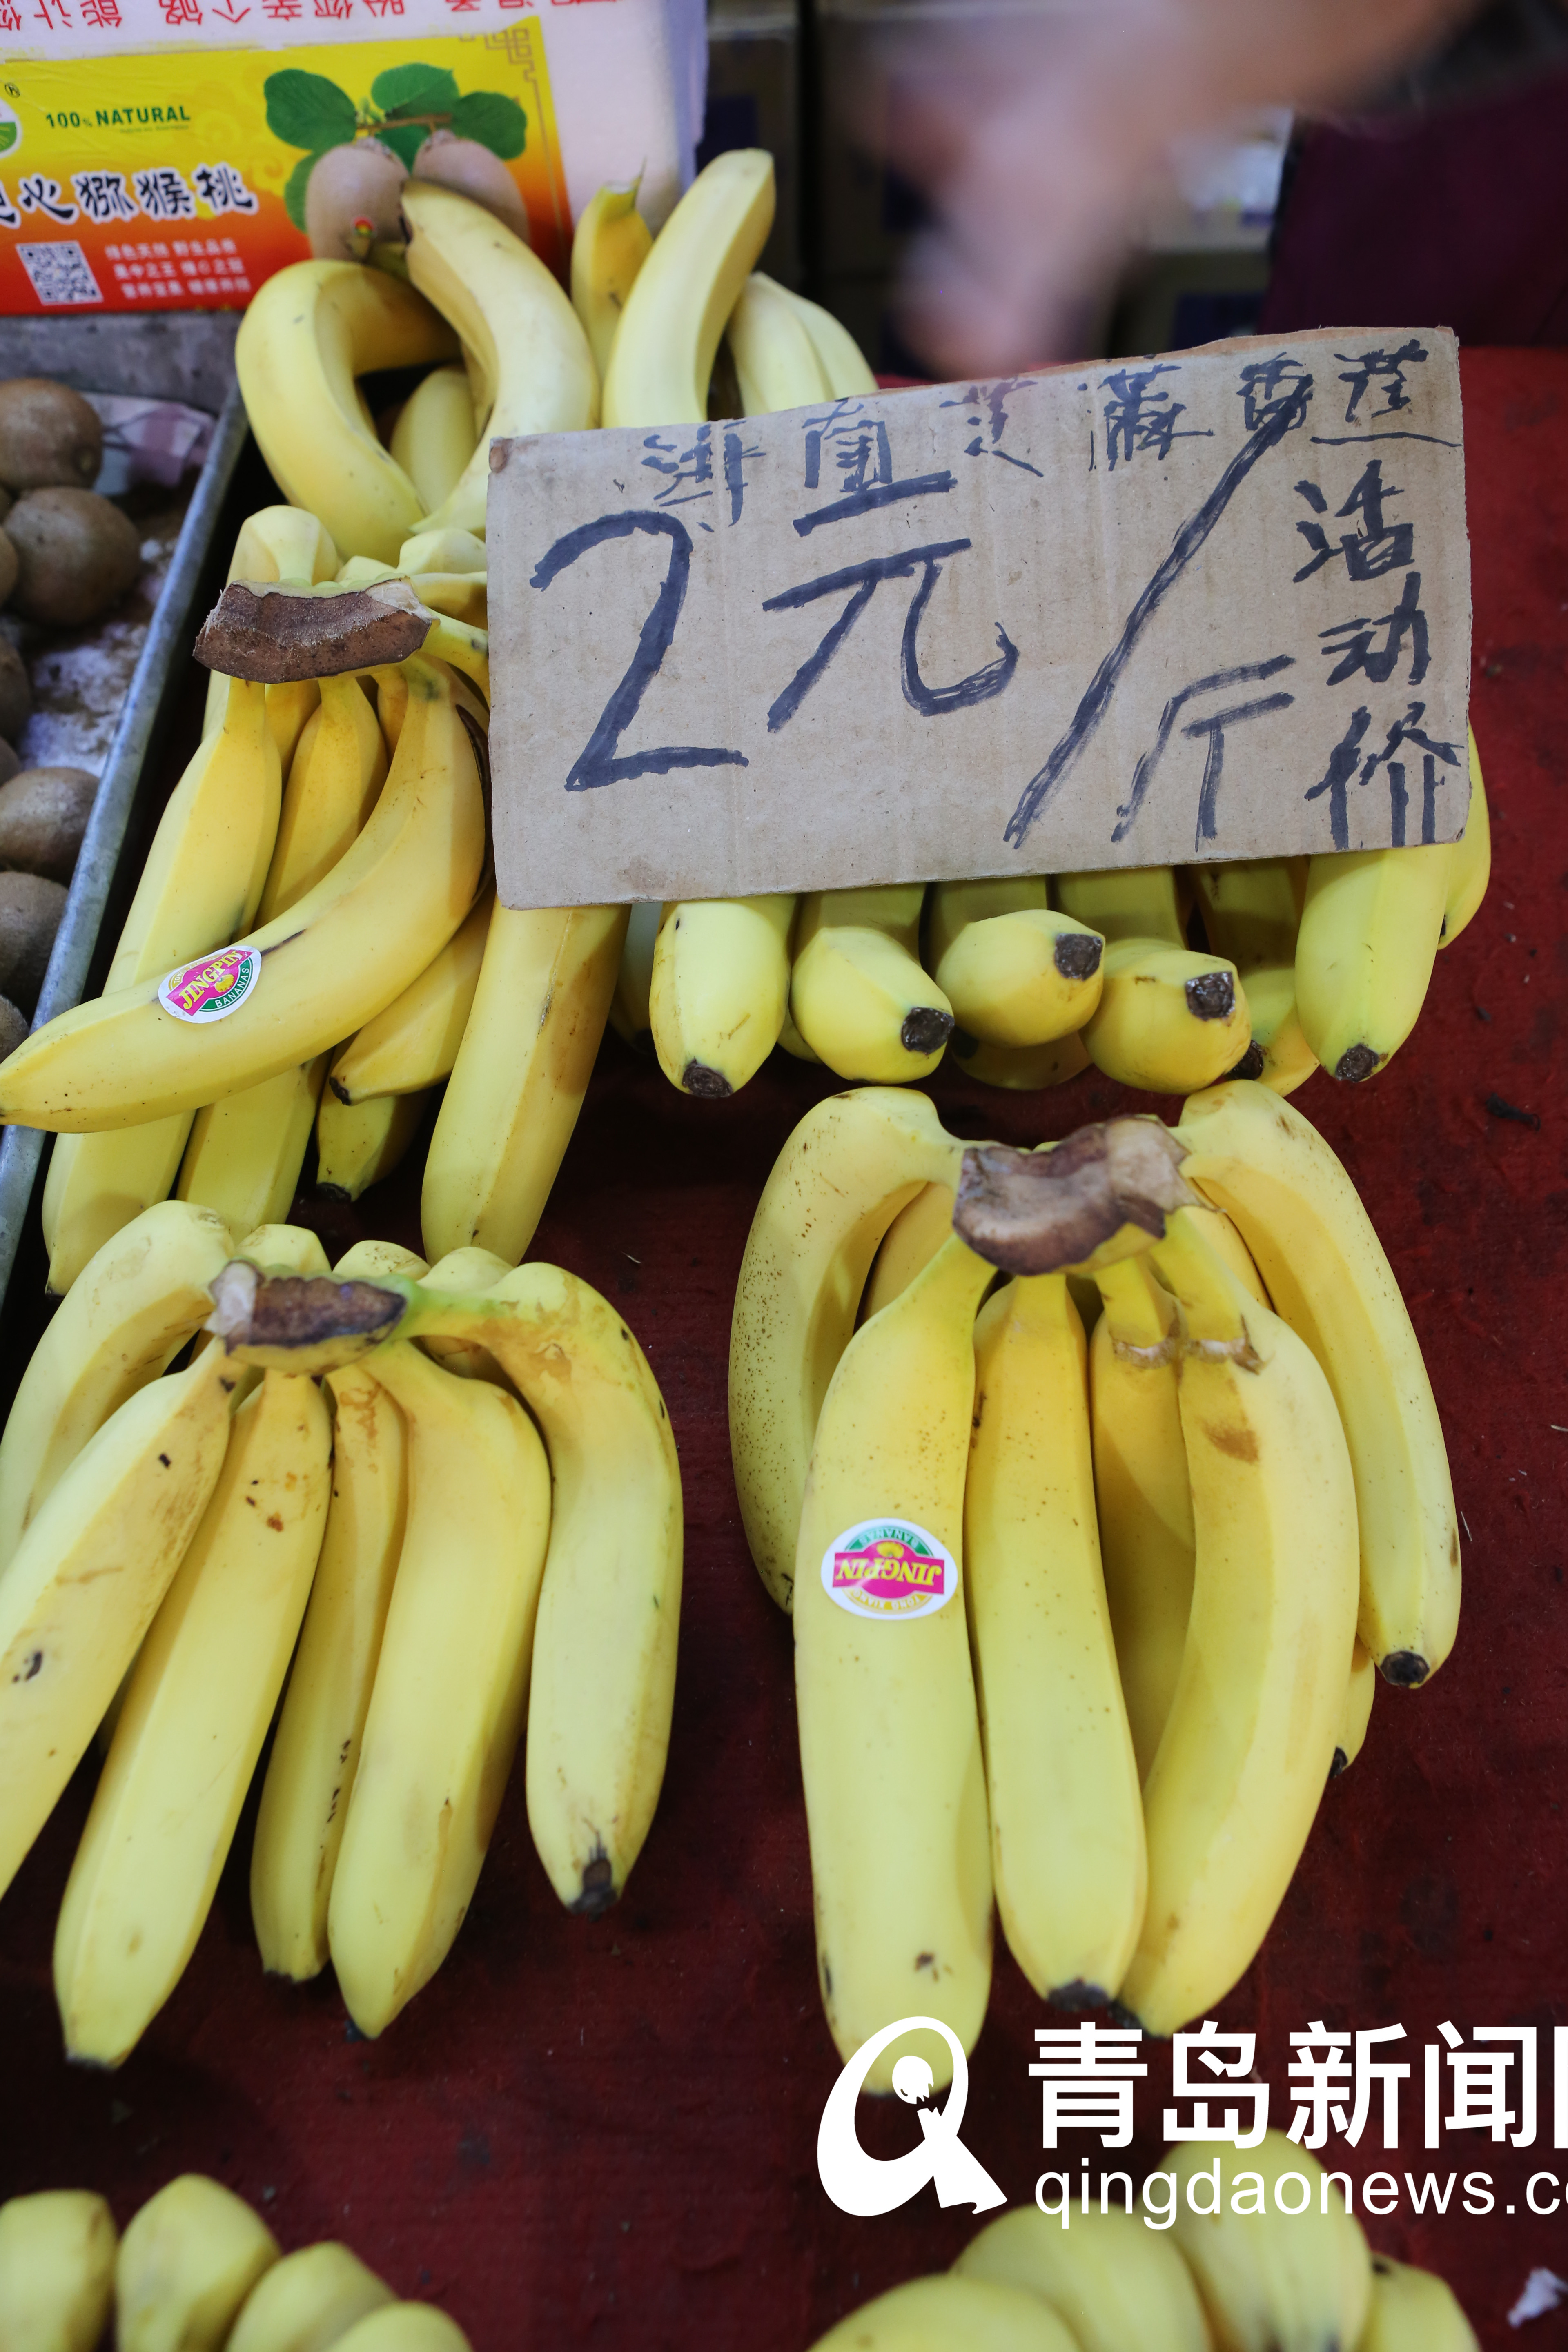 青岛这个早市香蕉白菜价热卖 摊主一上午卖千余斤